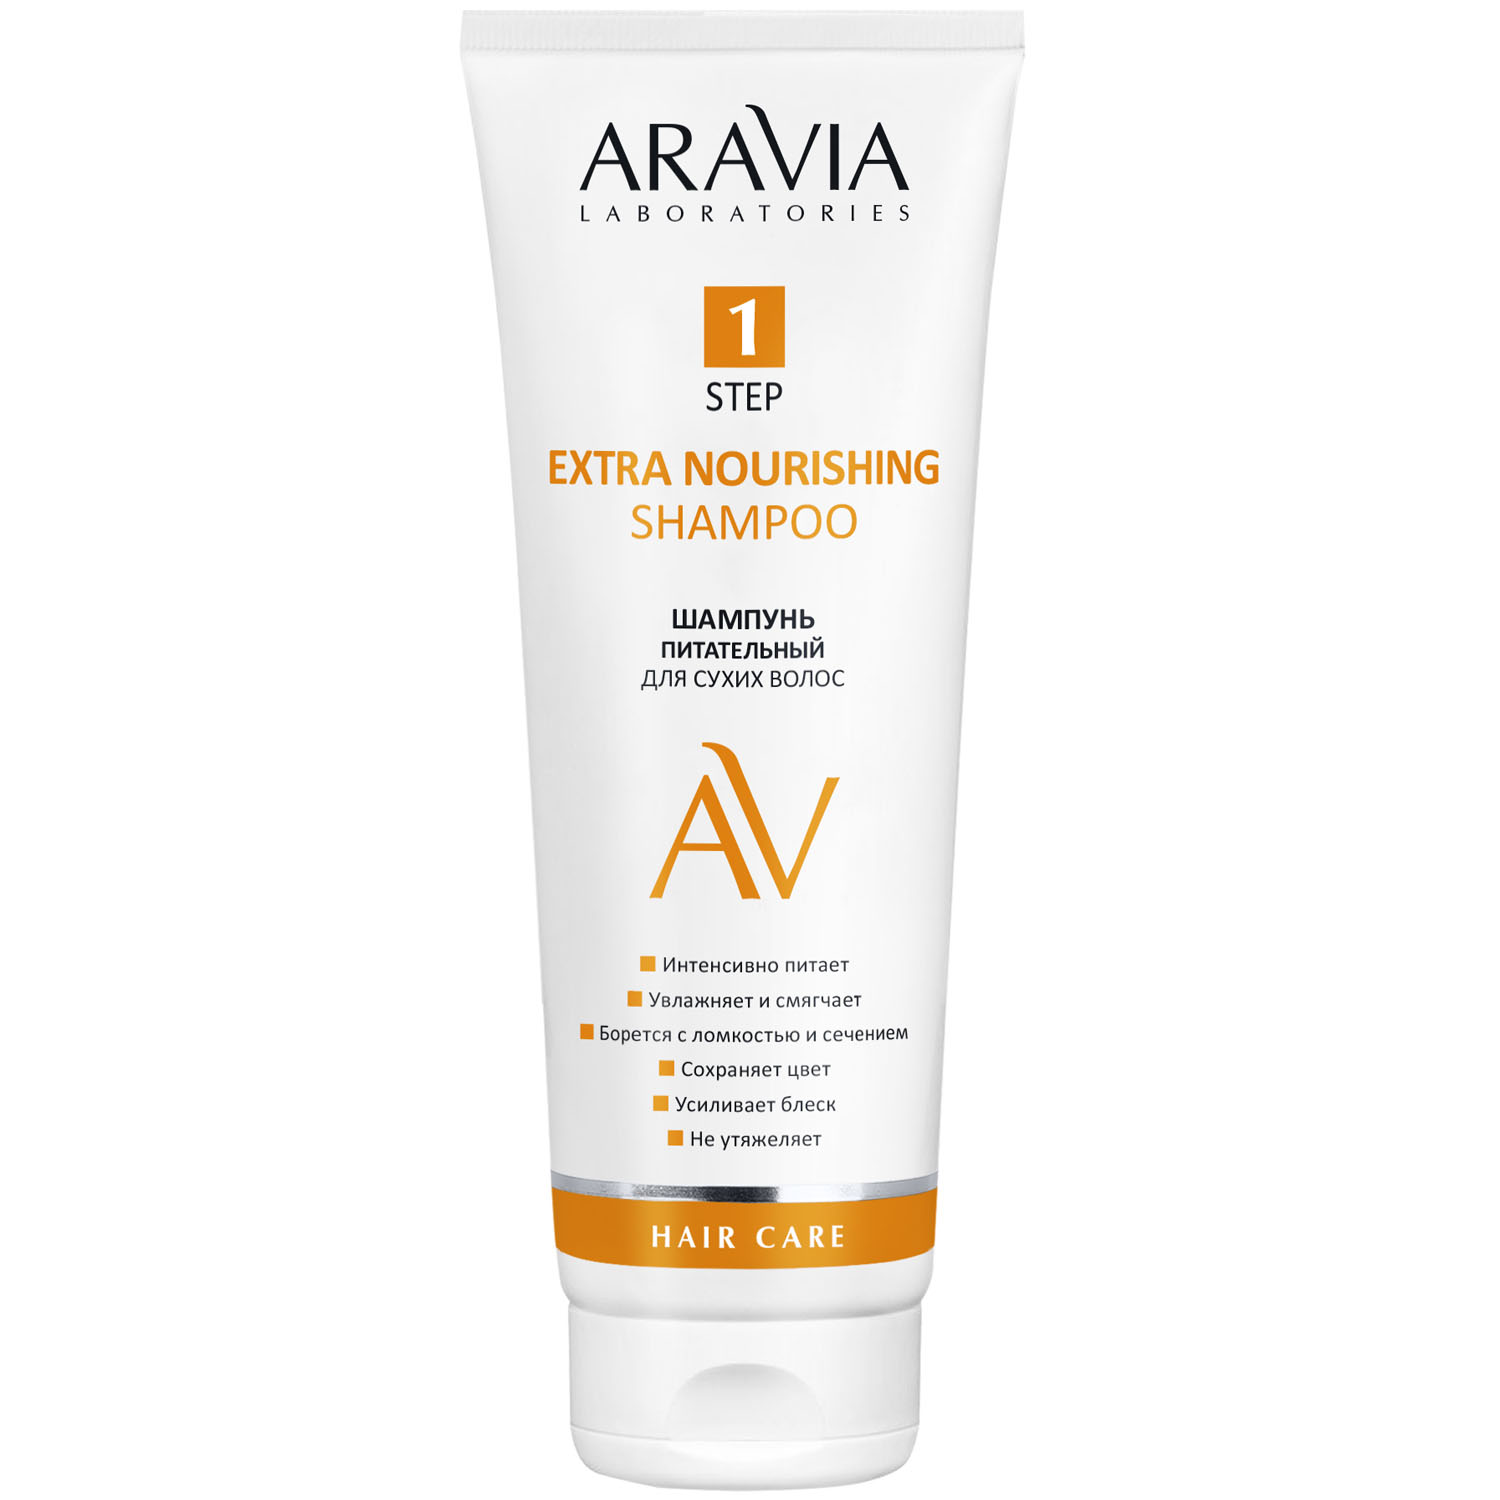 Aravia Laboratories Шампунь питательный для сухих волос Extra Nourishing Shampoo, 250 мл (Aravia Laboratories, Уход за волосами)